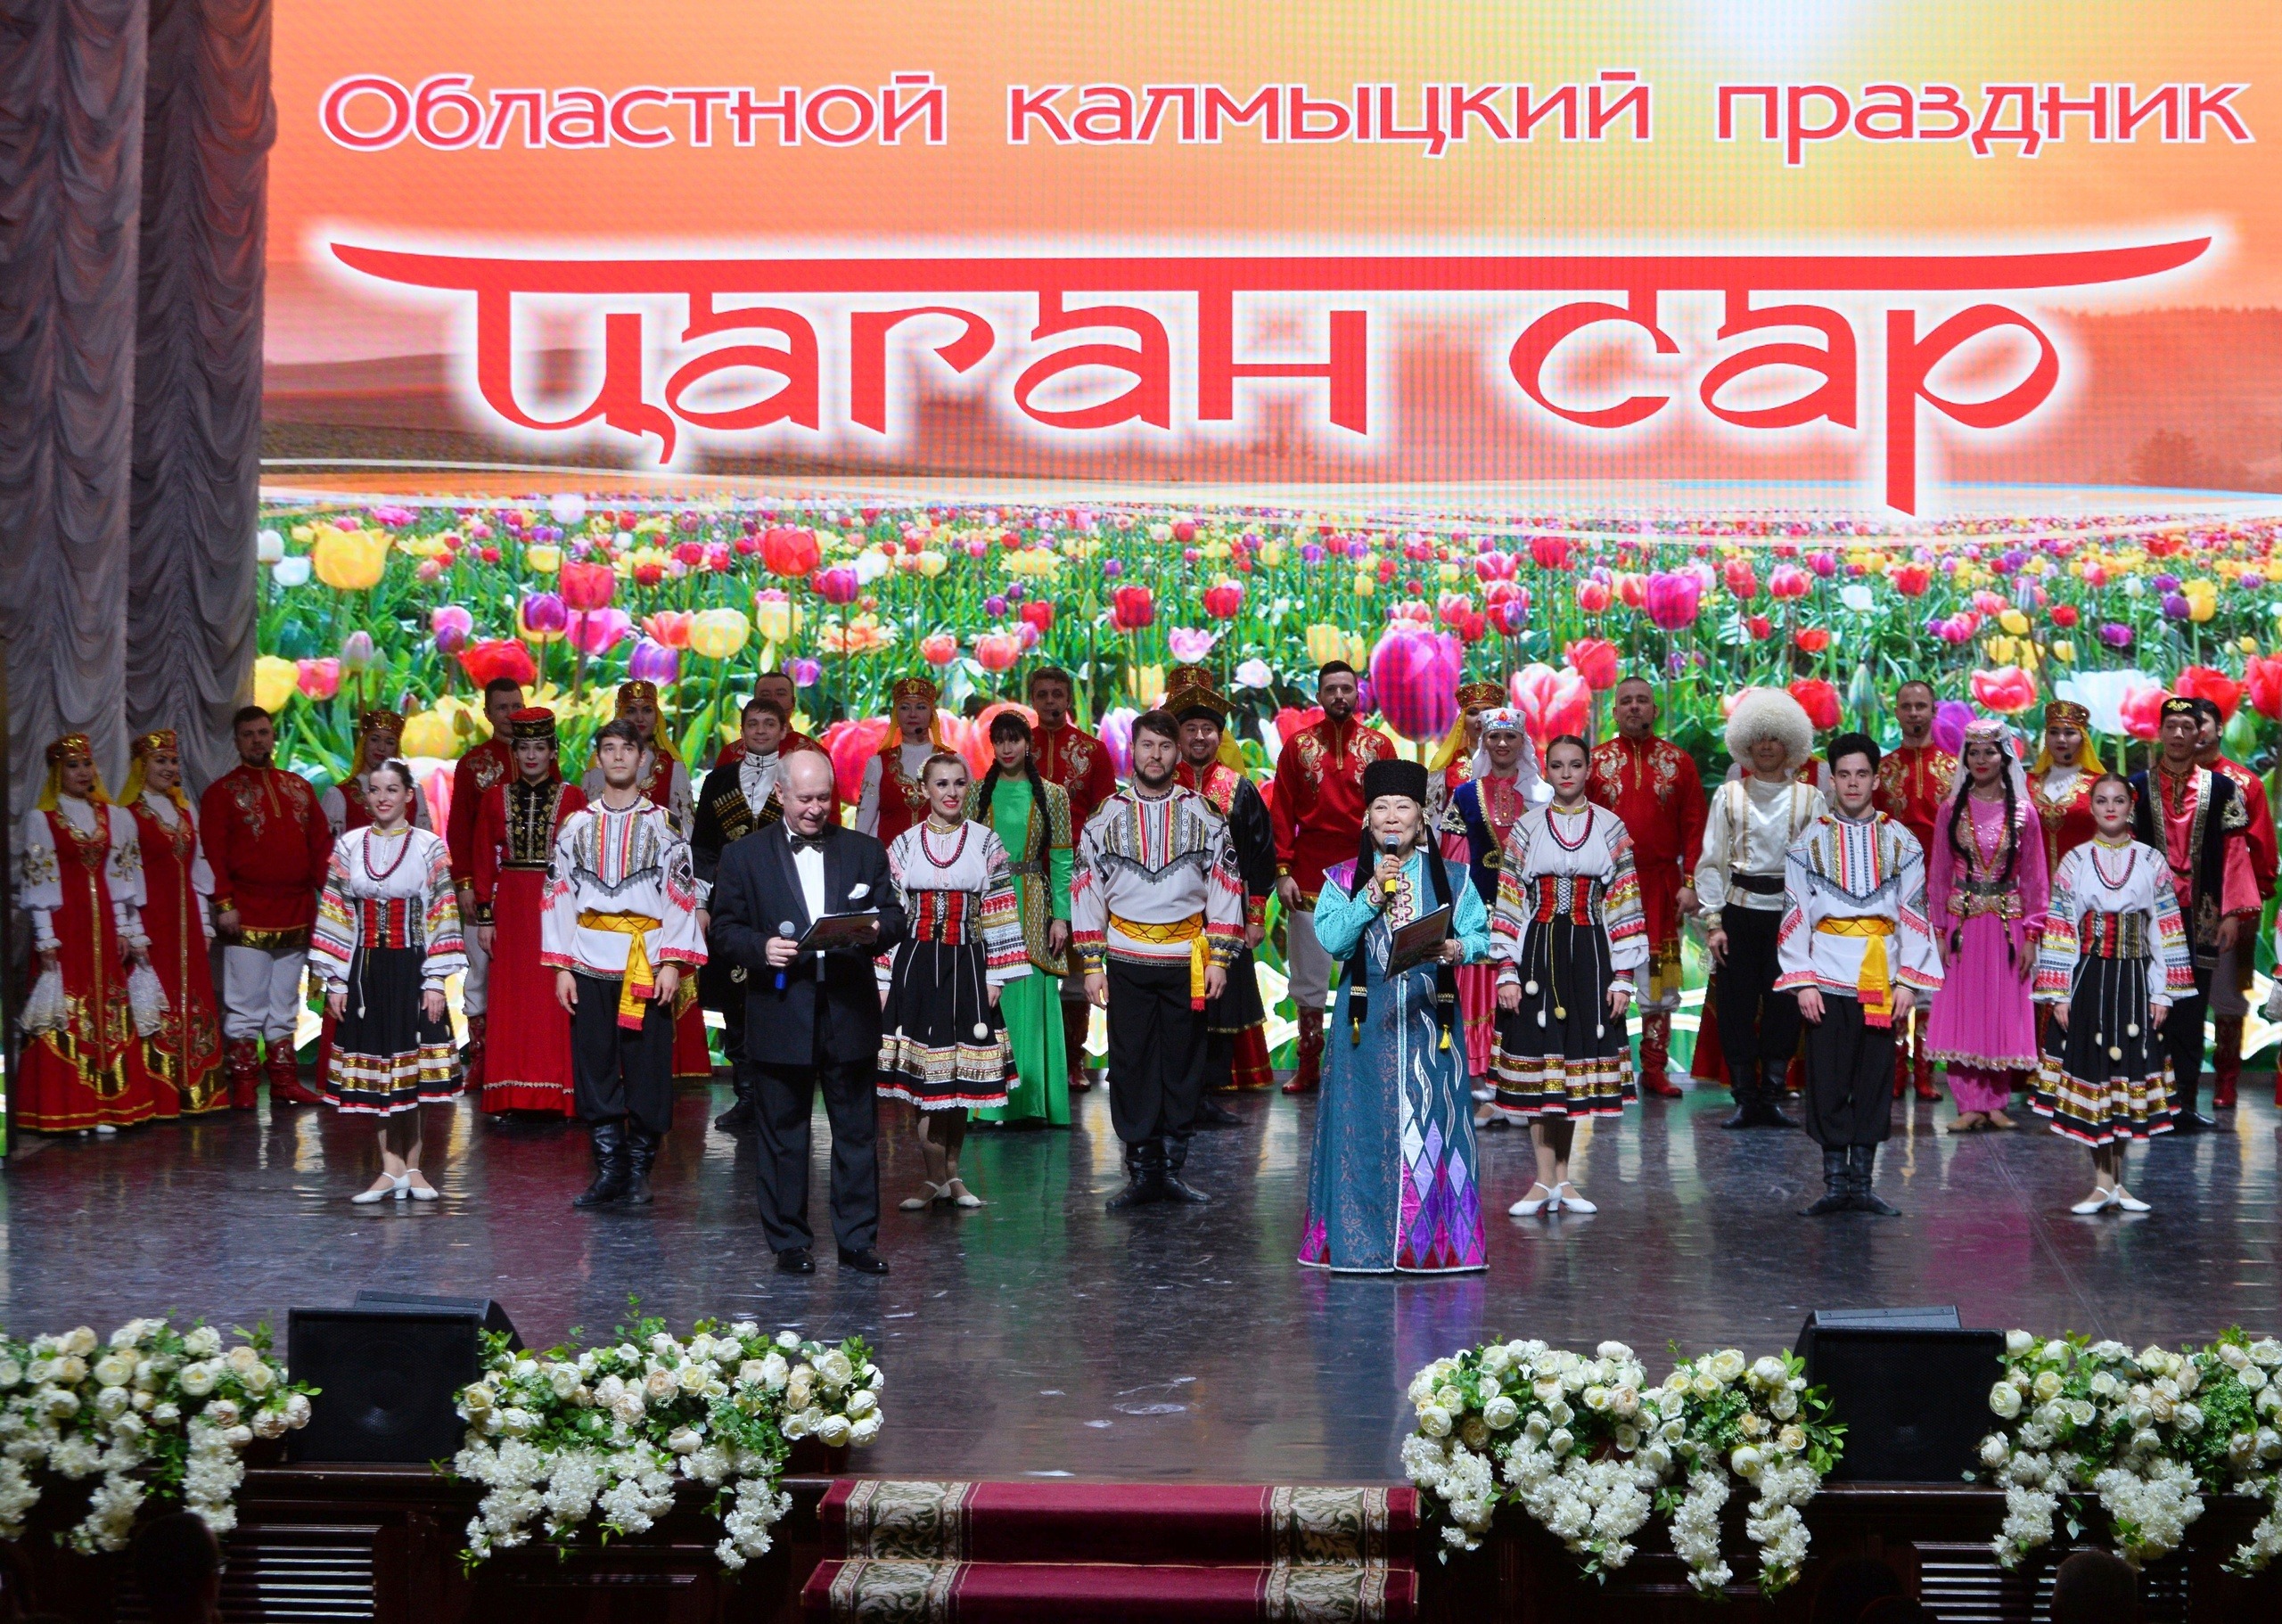 В Астрахани пройдет областной калмыцкий праздник «Цаган-сар»